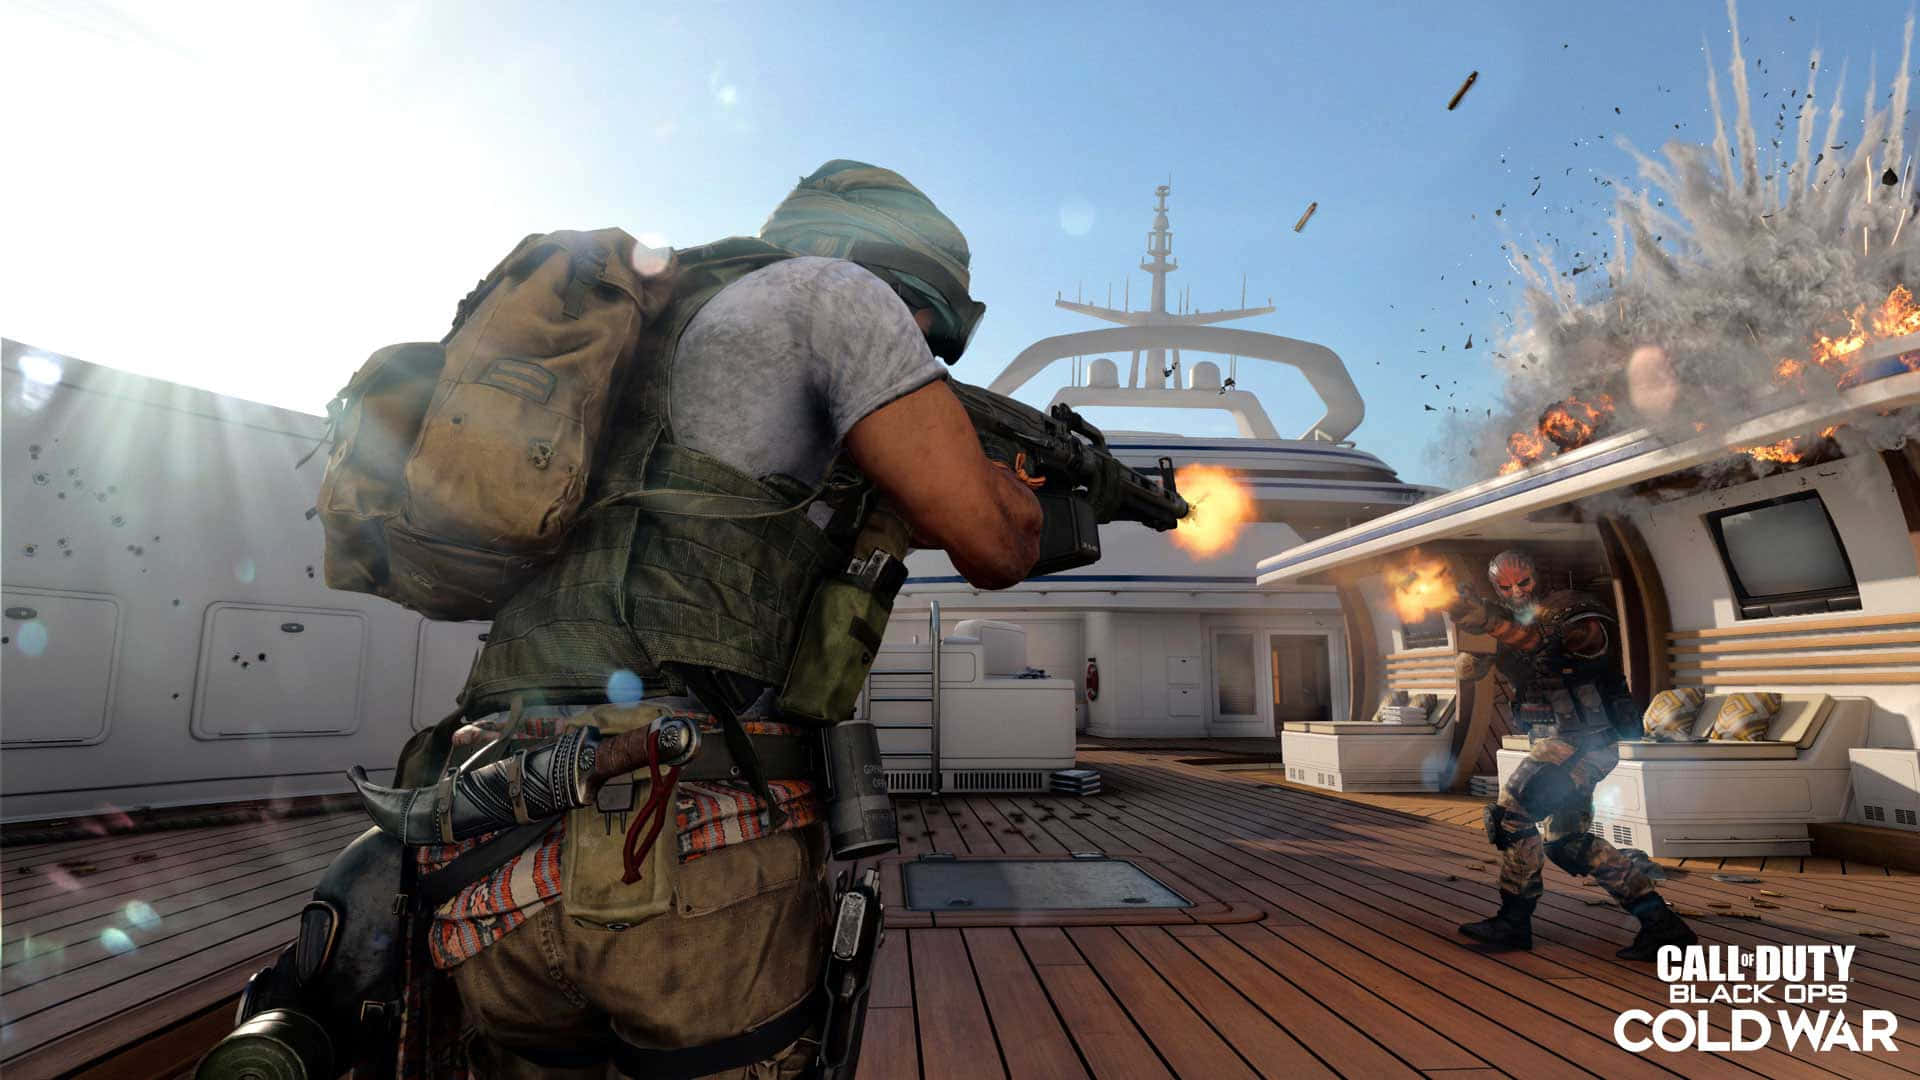 Immergitinel Mondo Delle Operazioni Segrete Con Questa Fantastica Call Of Duty: Black Ops Cold War Wallpaper In Alta Definizione.